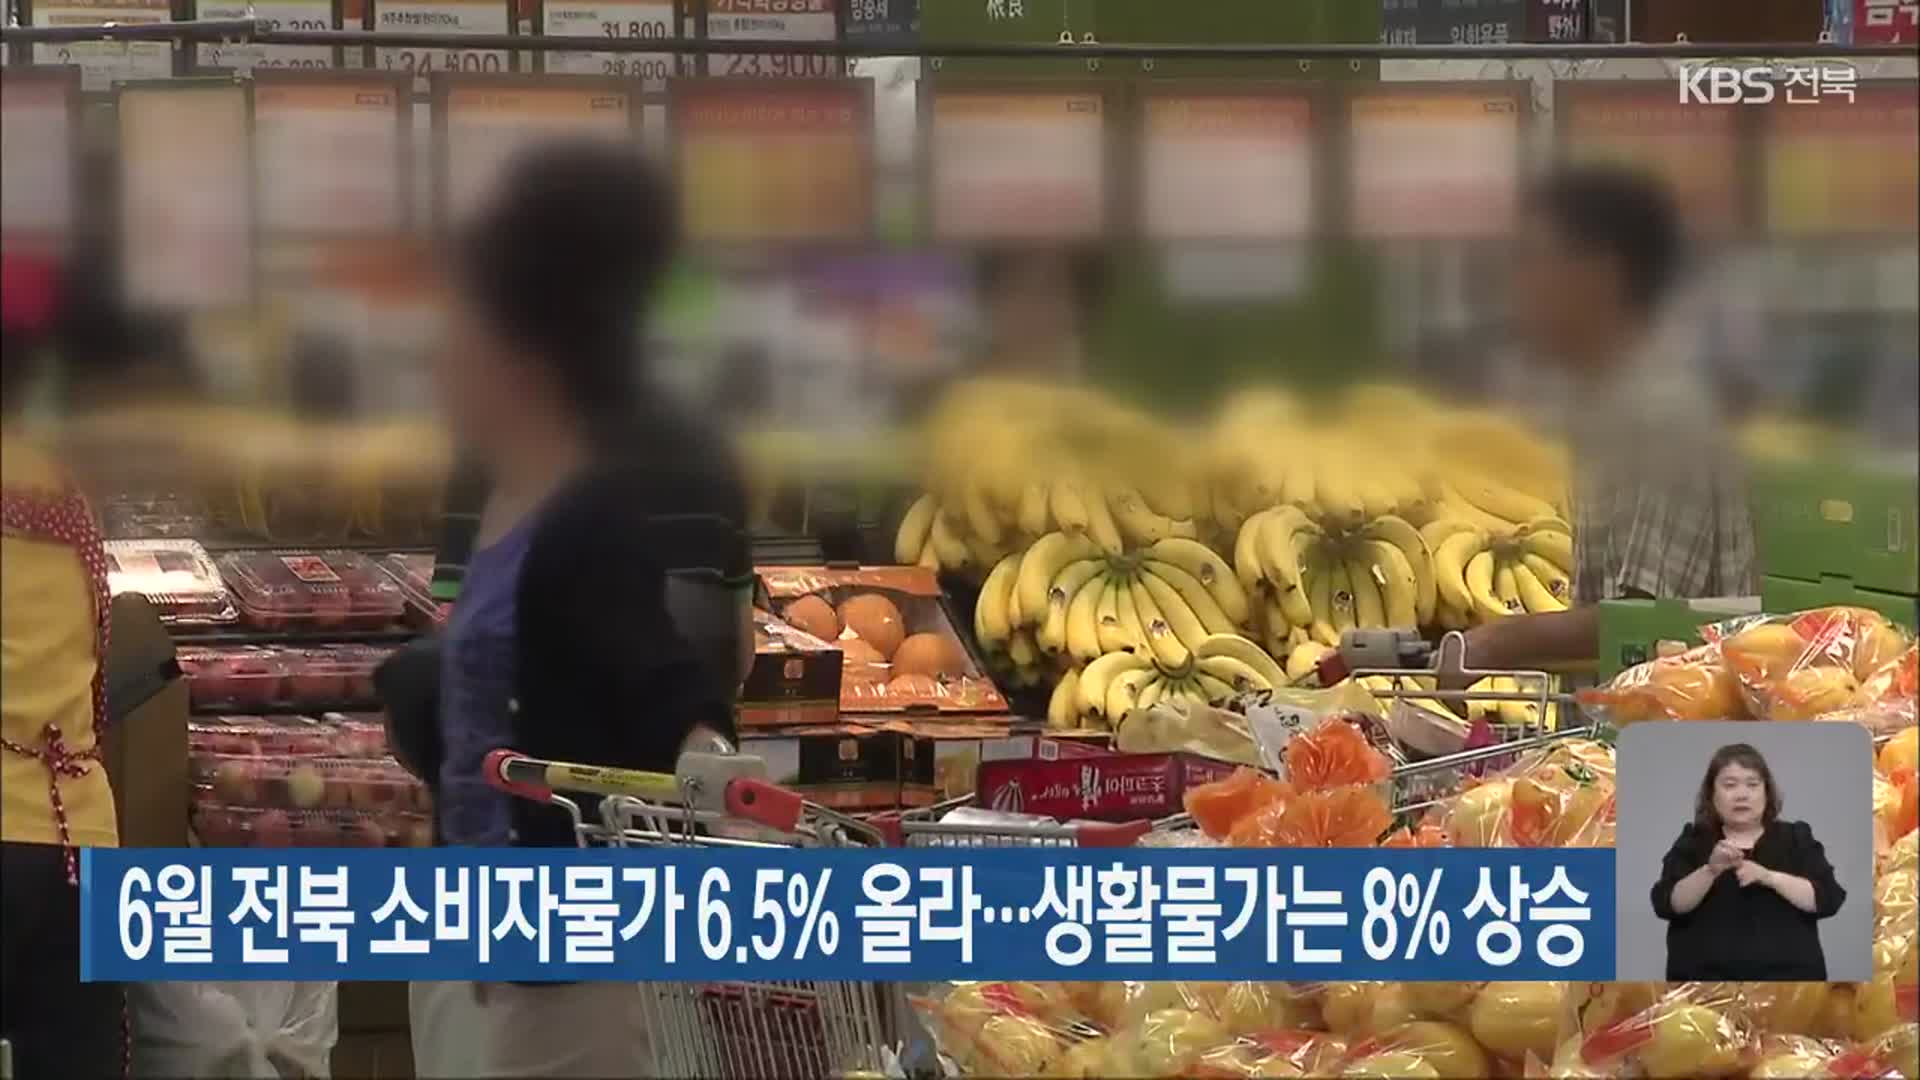 6월 전북 소비자물가 6.5% 올라…생활물가는 8% 상승